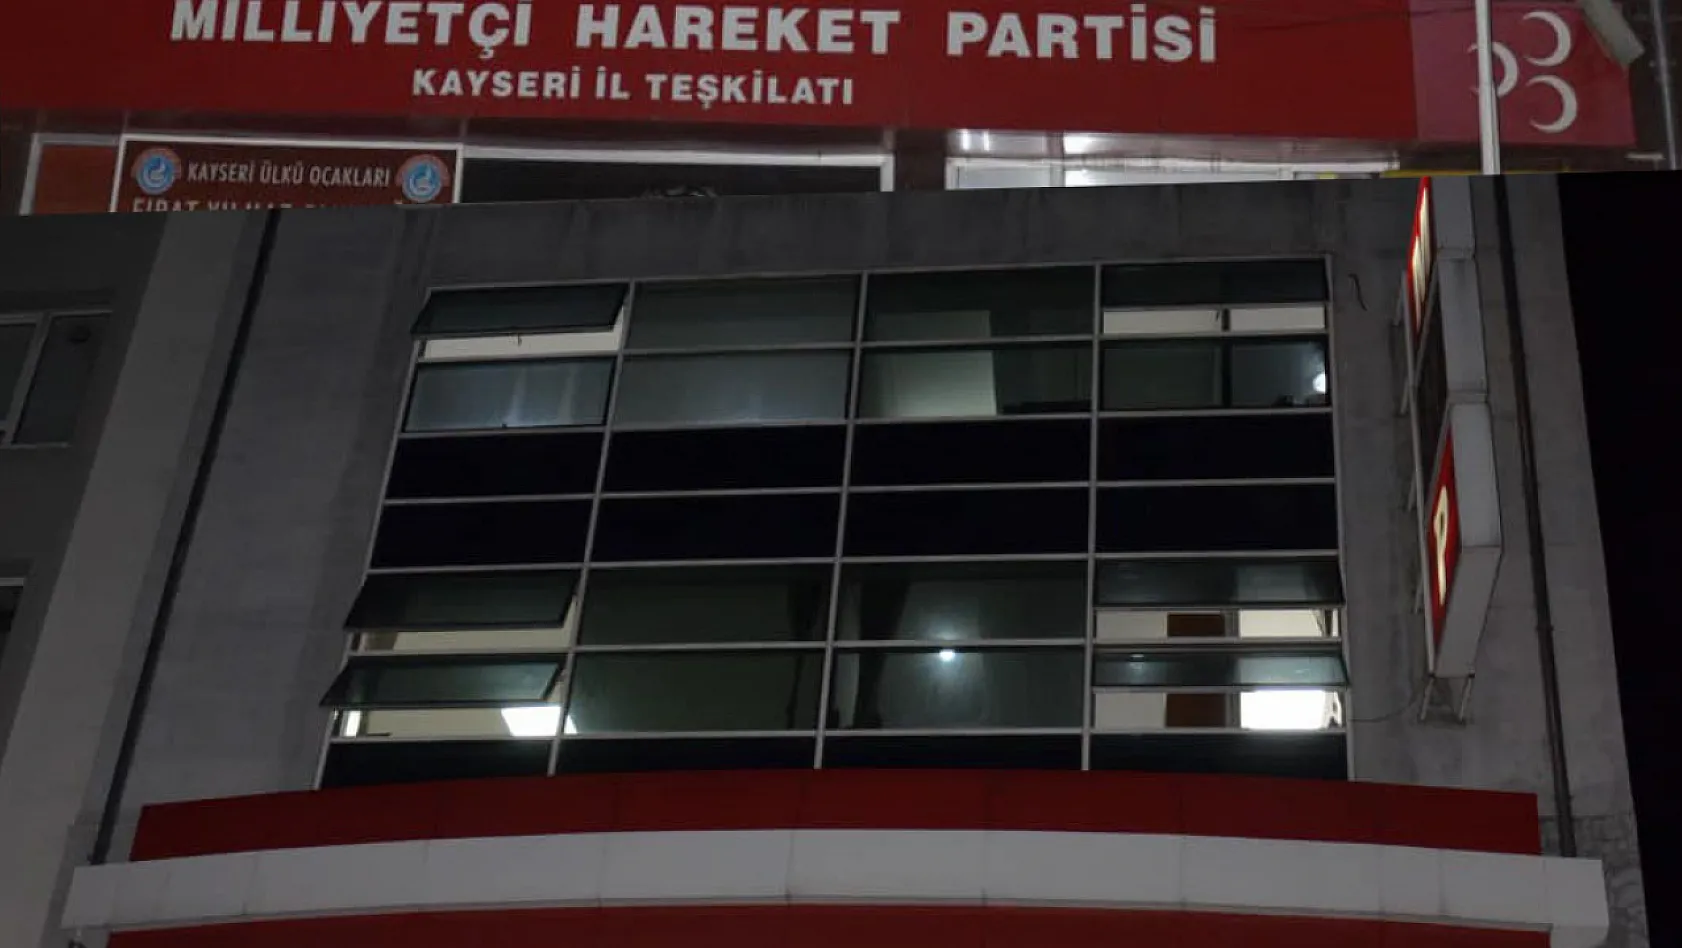 MHP Kayseri'de kimleri aday gösterecek? İşte hareketlenen kulislerde konuşulanlar